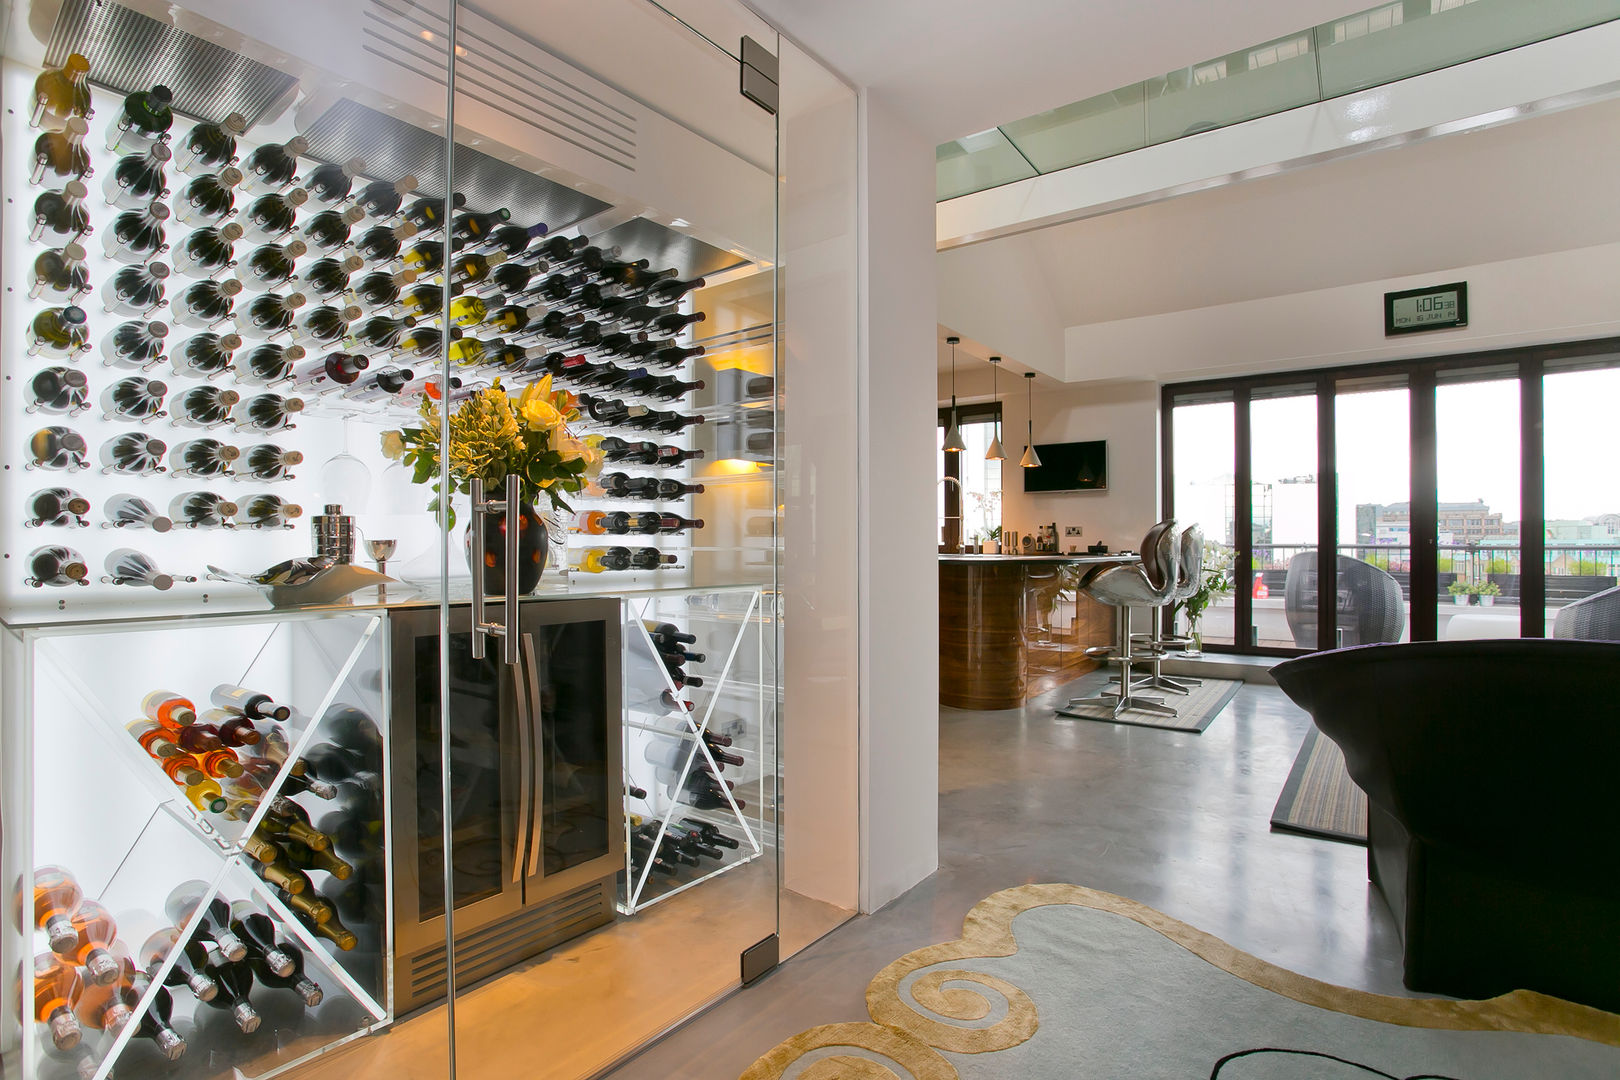 Hallway Temza design and build Bodegas de vino de estilo moderno Bodegas